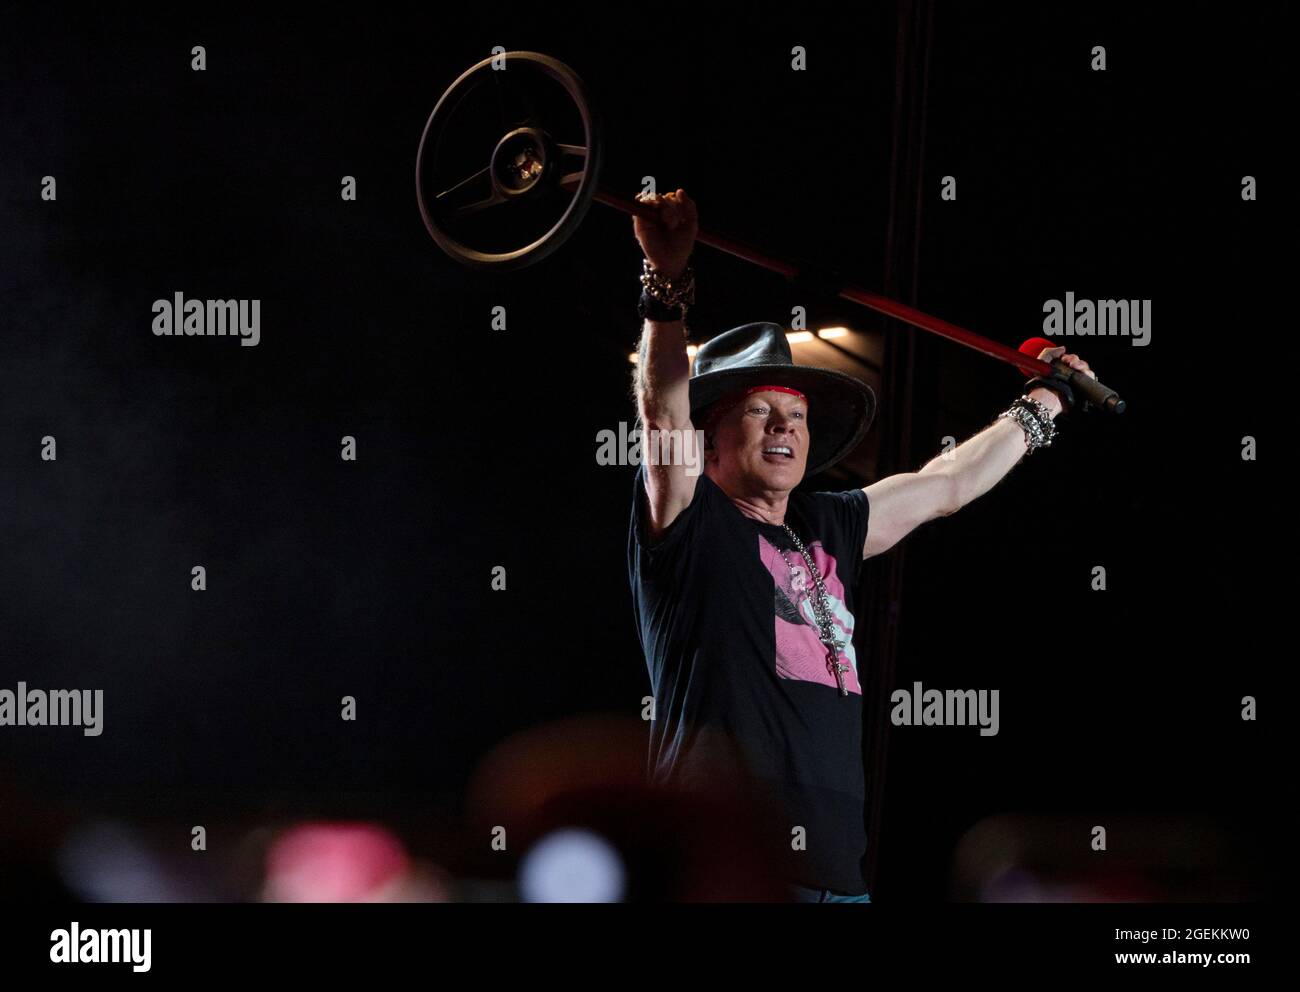 19 agosto 2021, Los Angeles, California, USA: Il cantante Axel Rose della rock band Guns N' Roses si esibisce dal vivo durante un concerto al Banc of California Stadium. (Credit Image: © K.C. Filo Alfred/ZUMA Press) Foto Stock